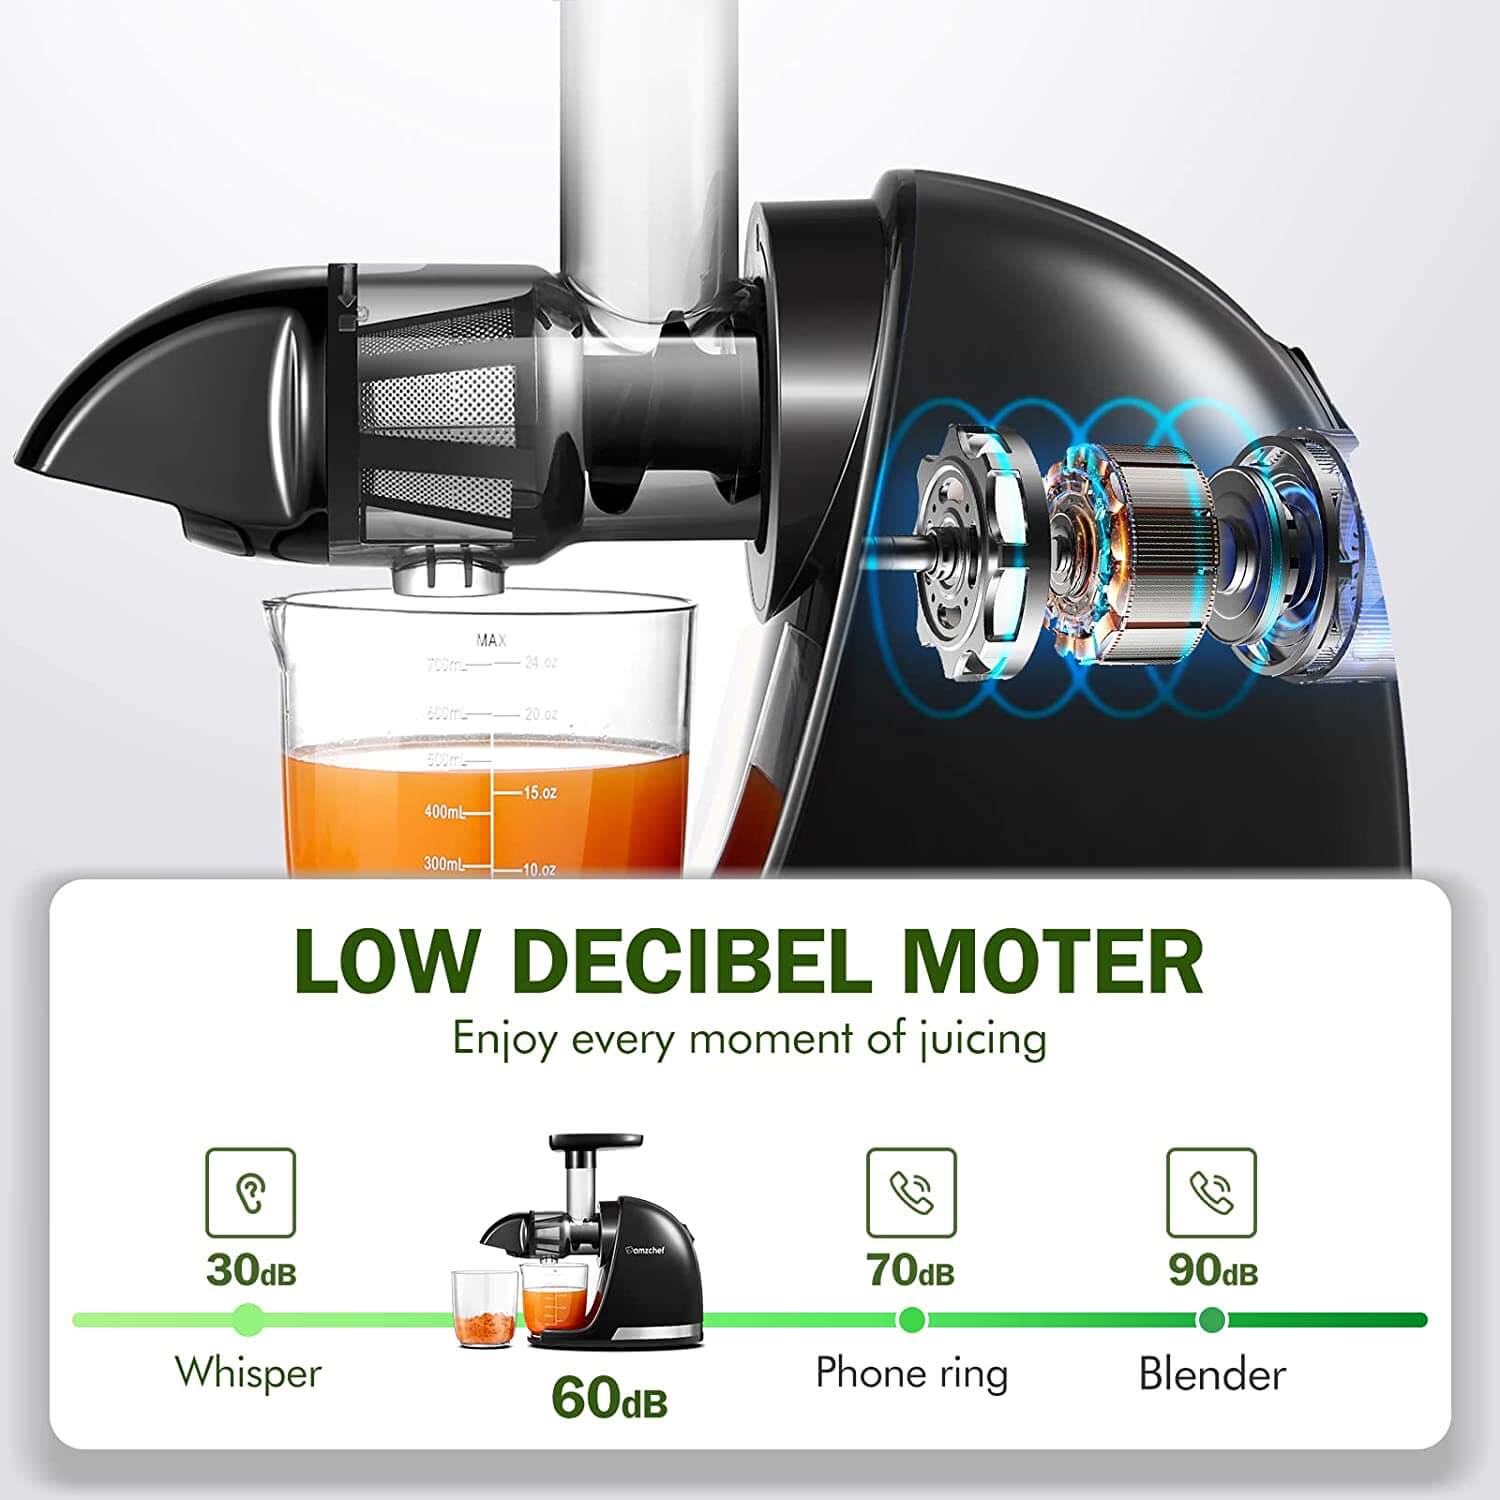 AMZCHEF Slow Juicer Machine ZM1501 Green